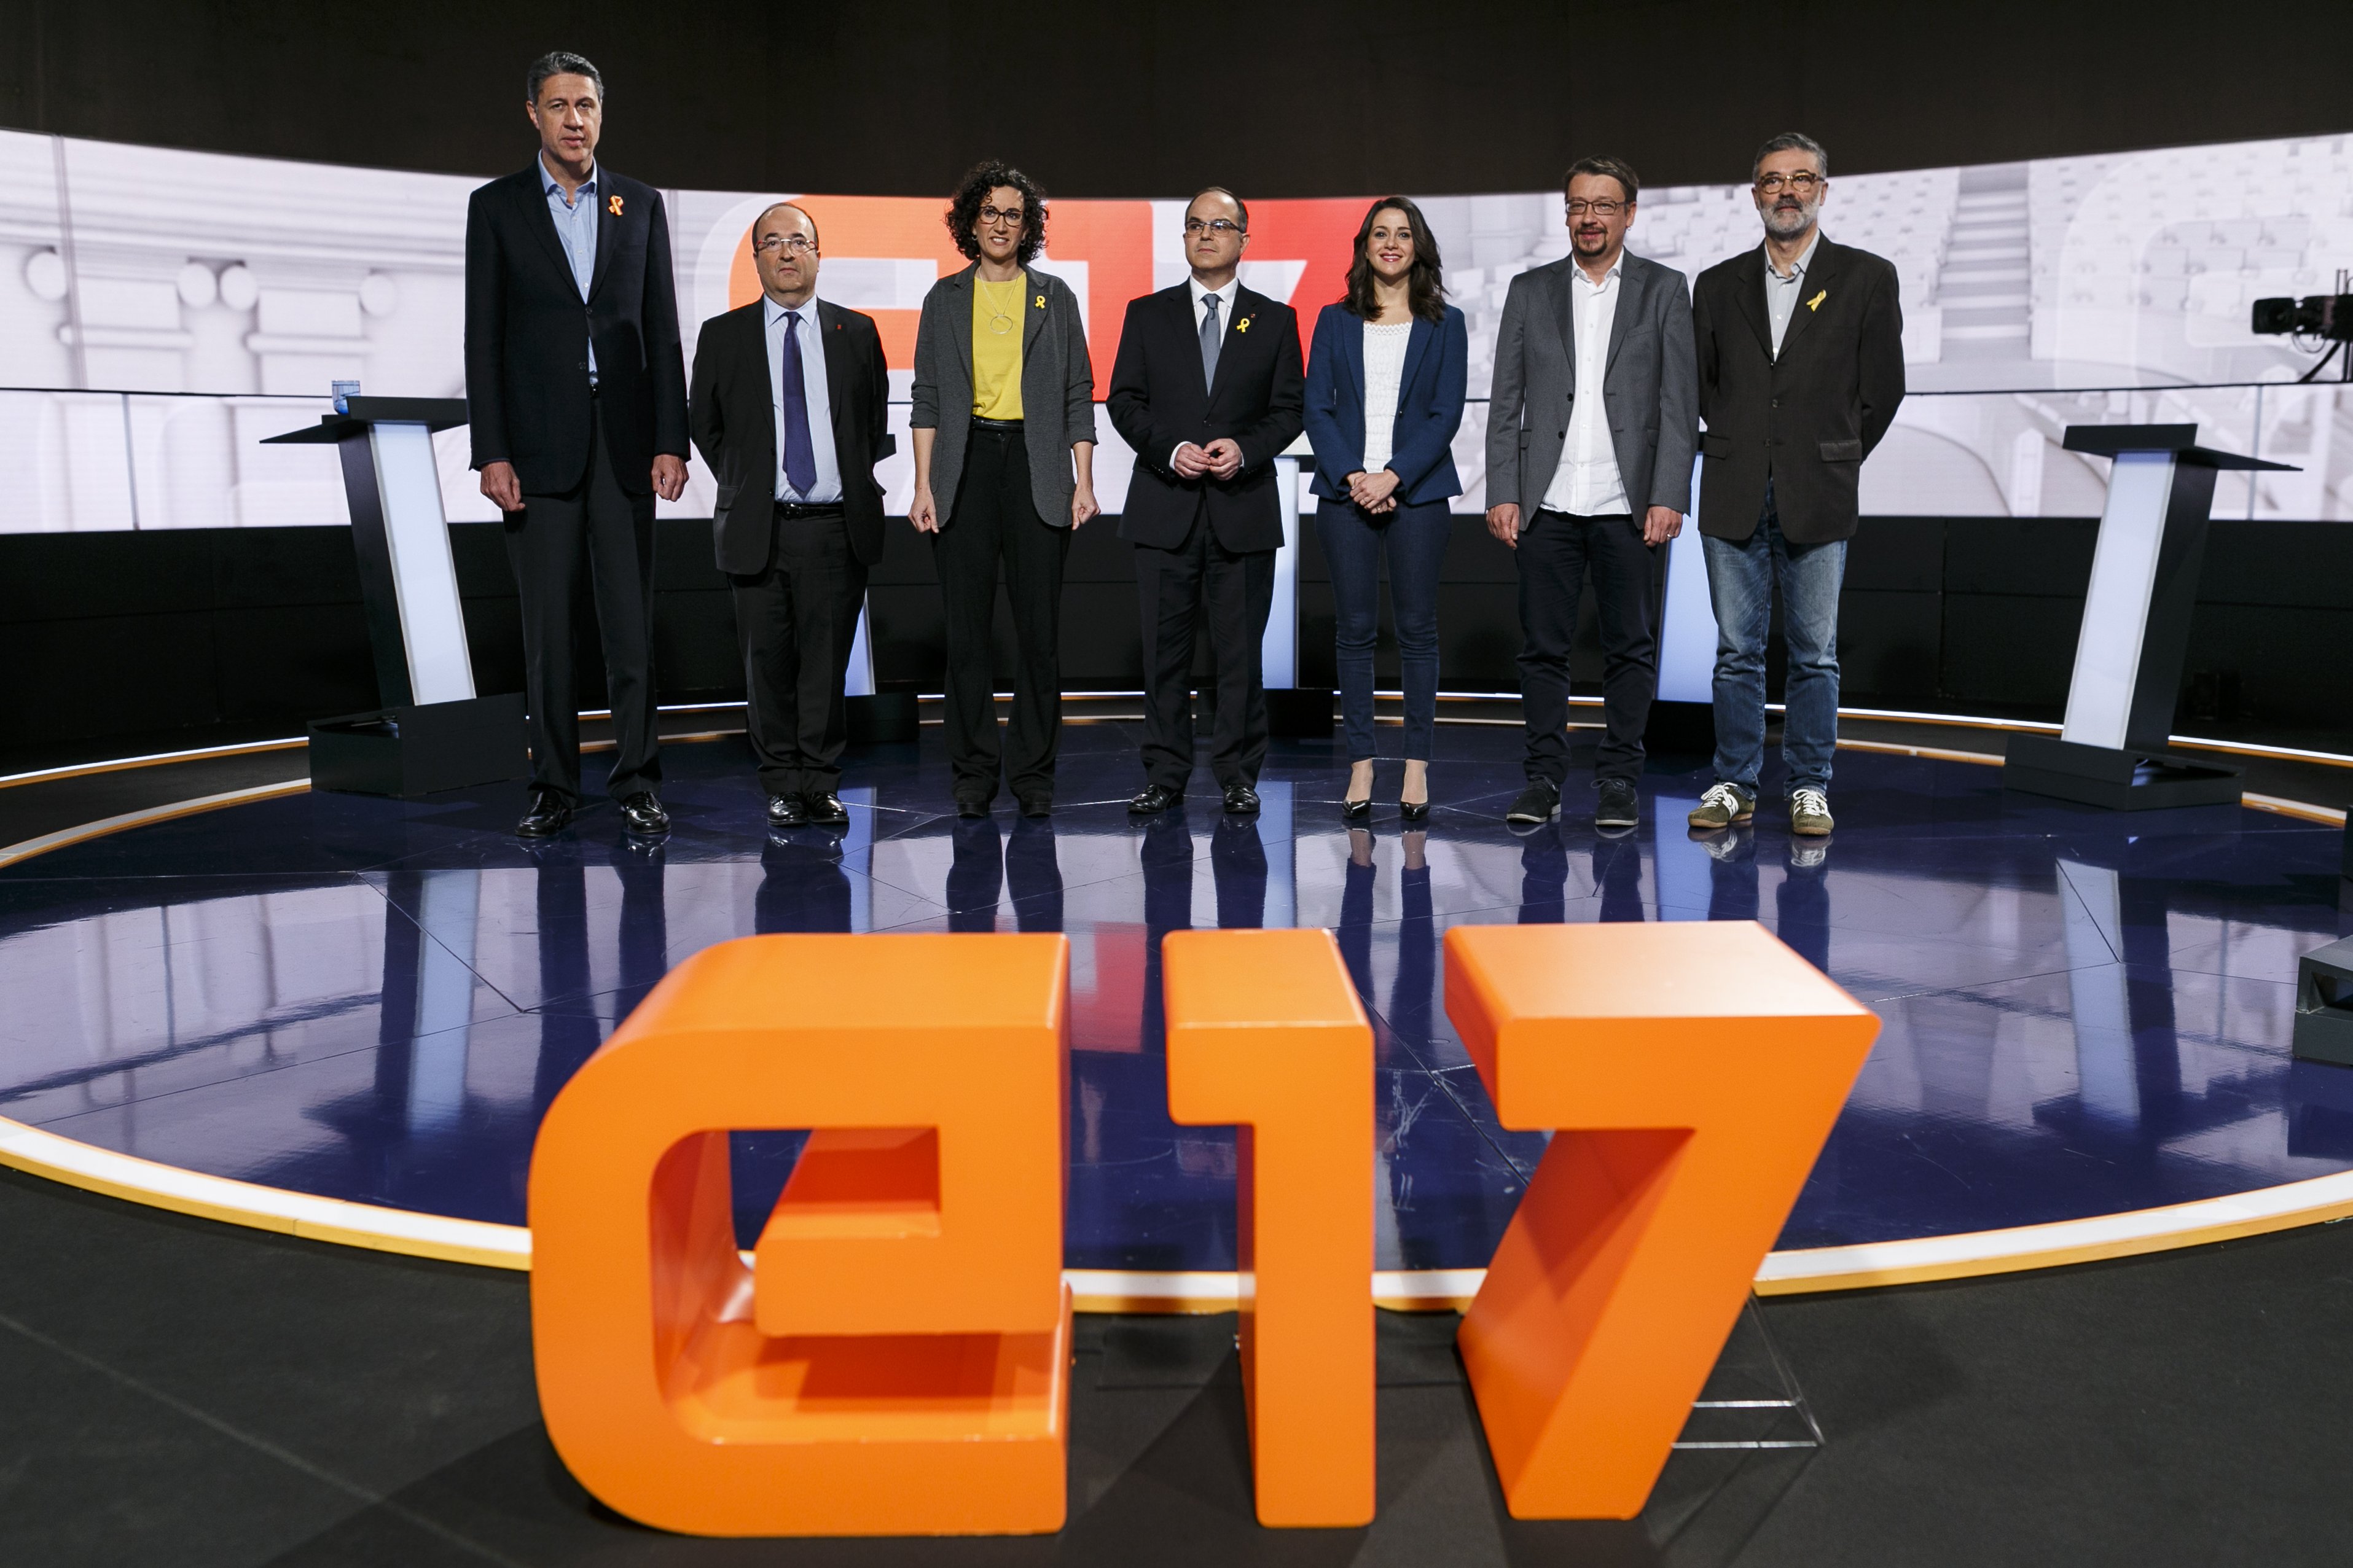 Les travesses electorals dels candidats a TV3